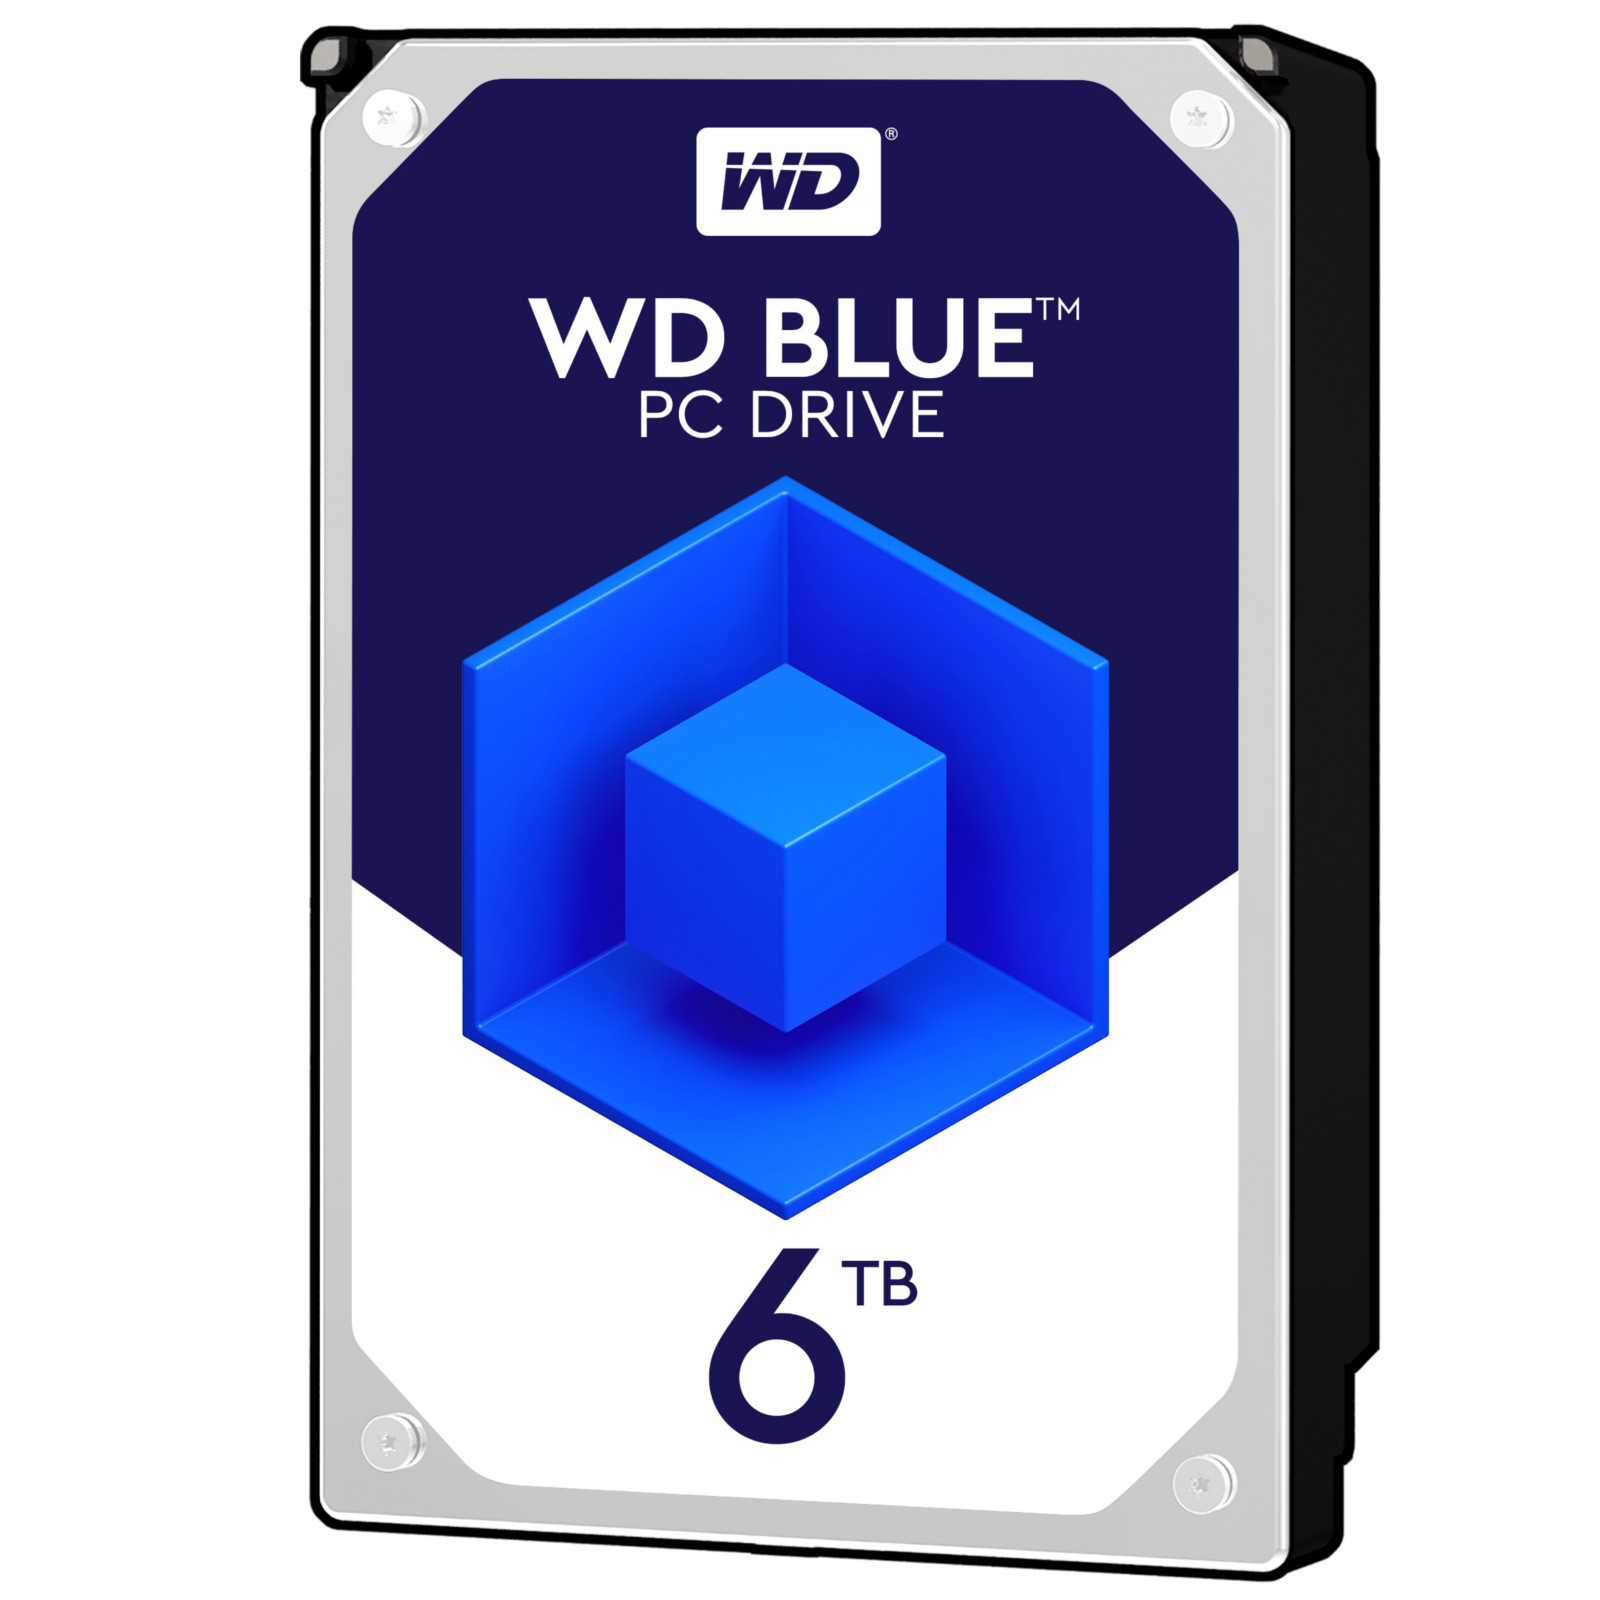 WD 6TB Blue HDD 5400rpm 256MB Cache Internal Hard Drive (WD60EZAZ